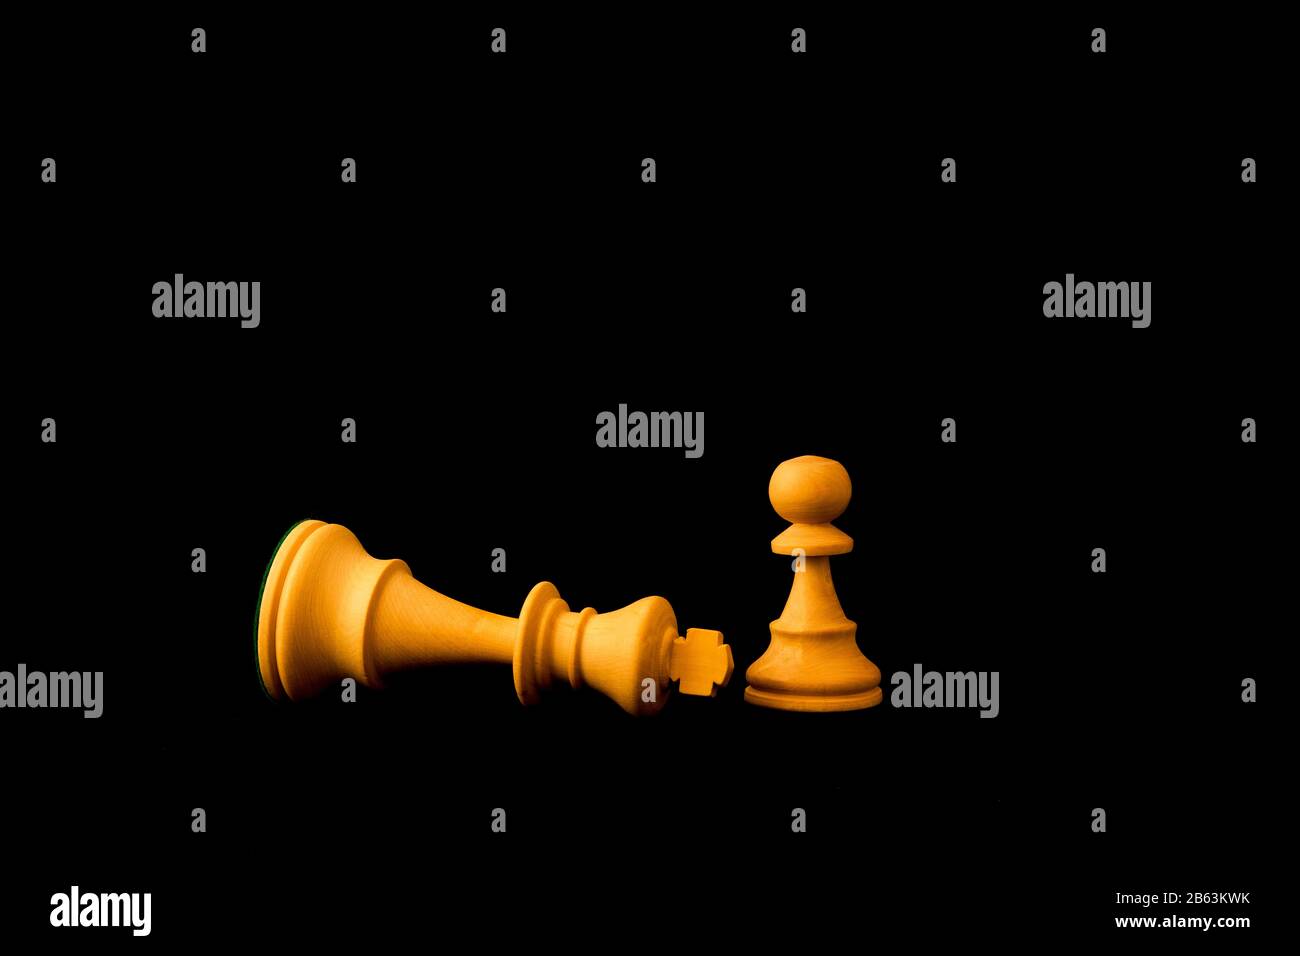 König gibt sich dem Pfandleiher, da die kleinen und Schwachen das große und mächtige Konzept besiegen können. Zwei standardmäßige Schach-Holzstücke auf schwarzem Hintergrund Stockfoto